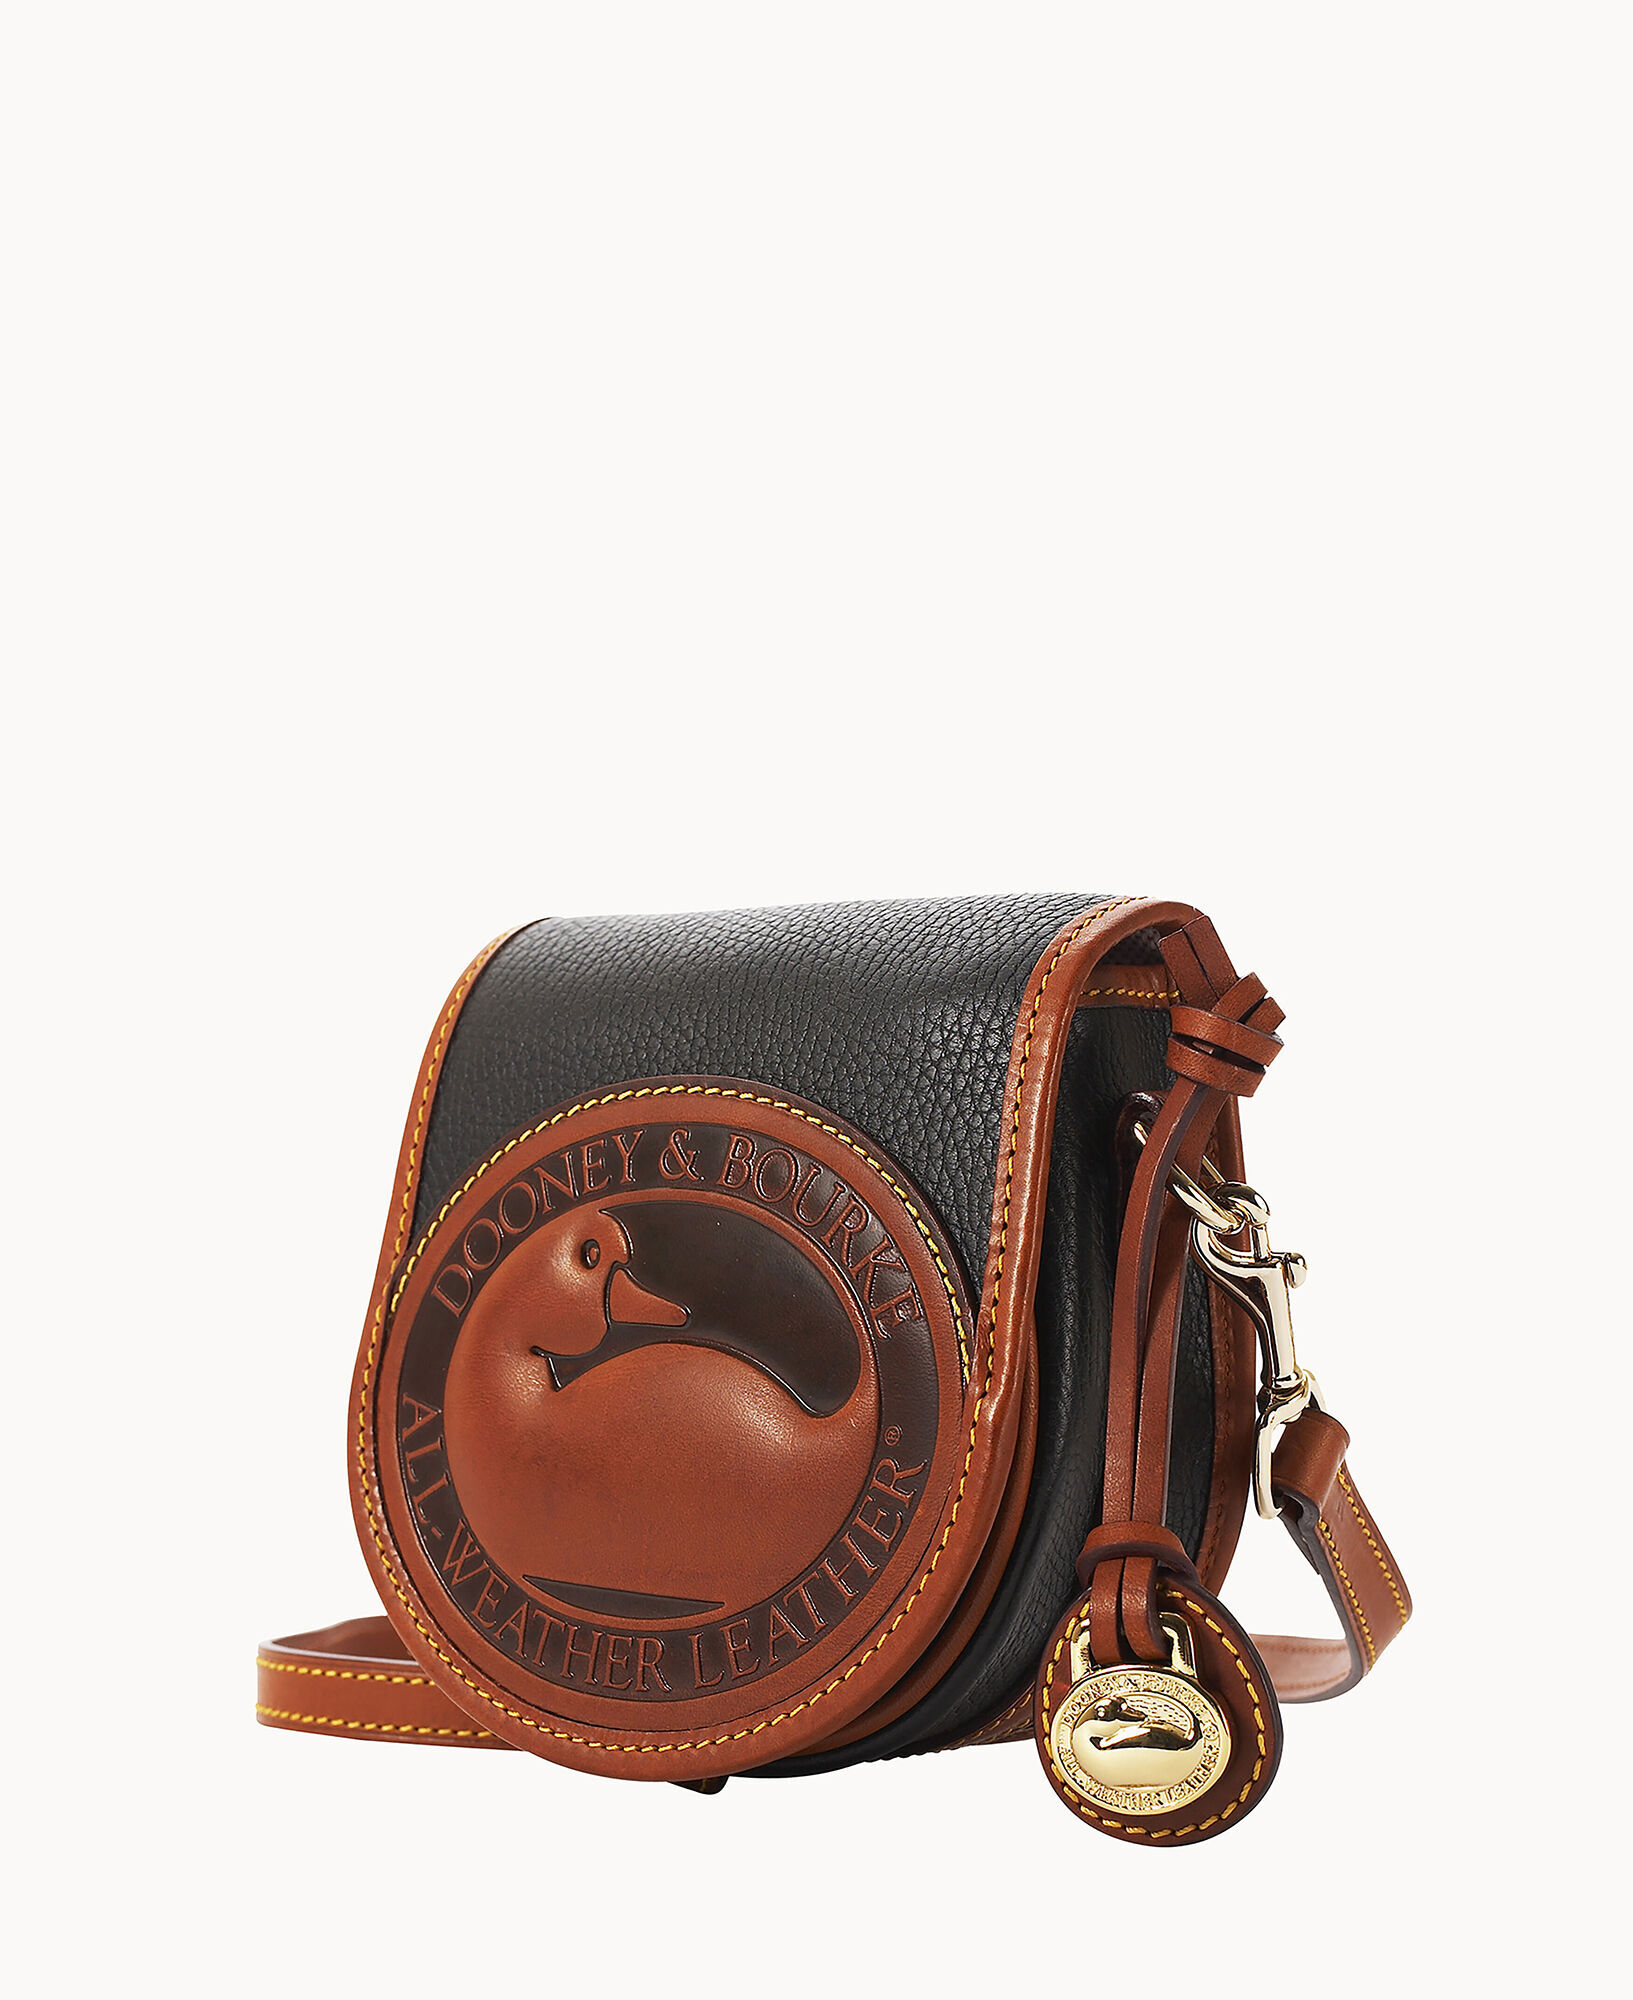 Handbag With Duck Logo | lupon.gov.ph